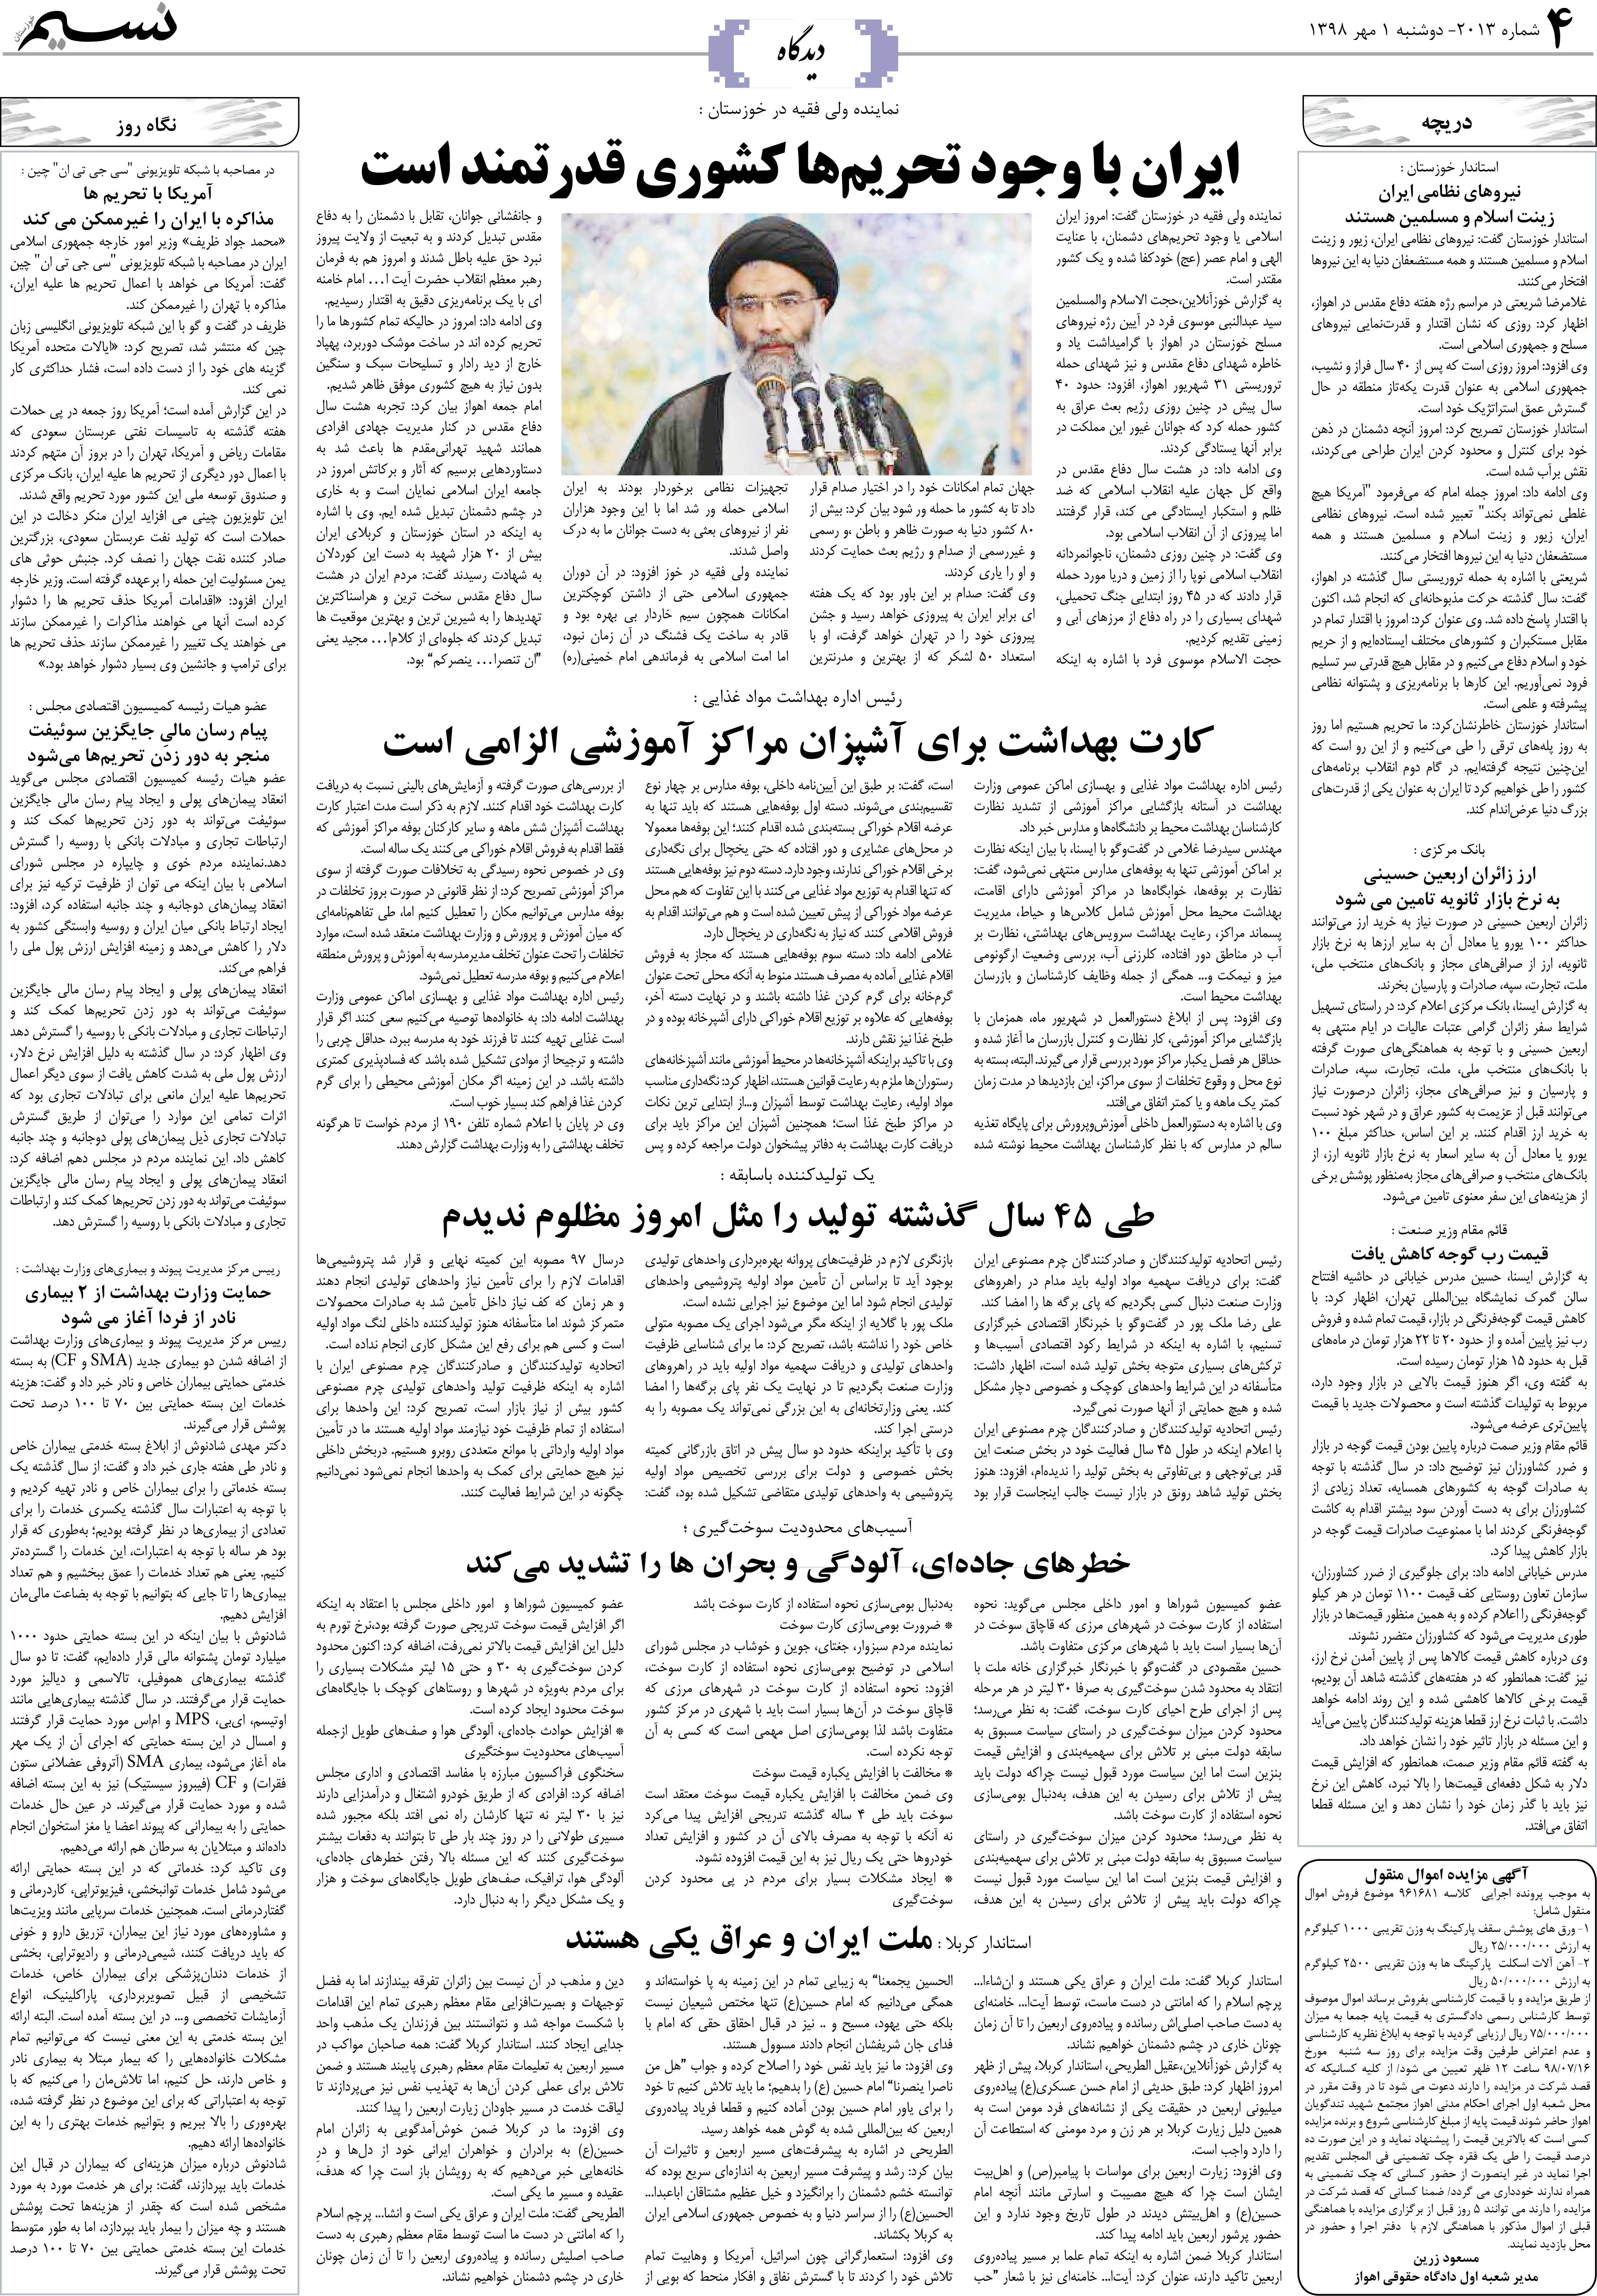 صفحه دیدگاه روزنامه نسیم شماره 2013